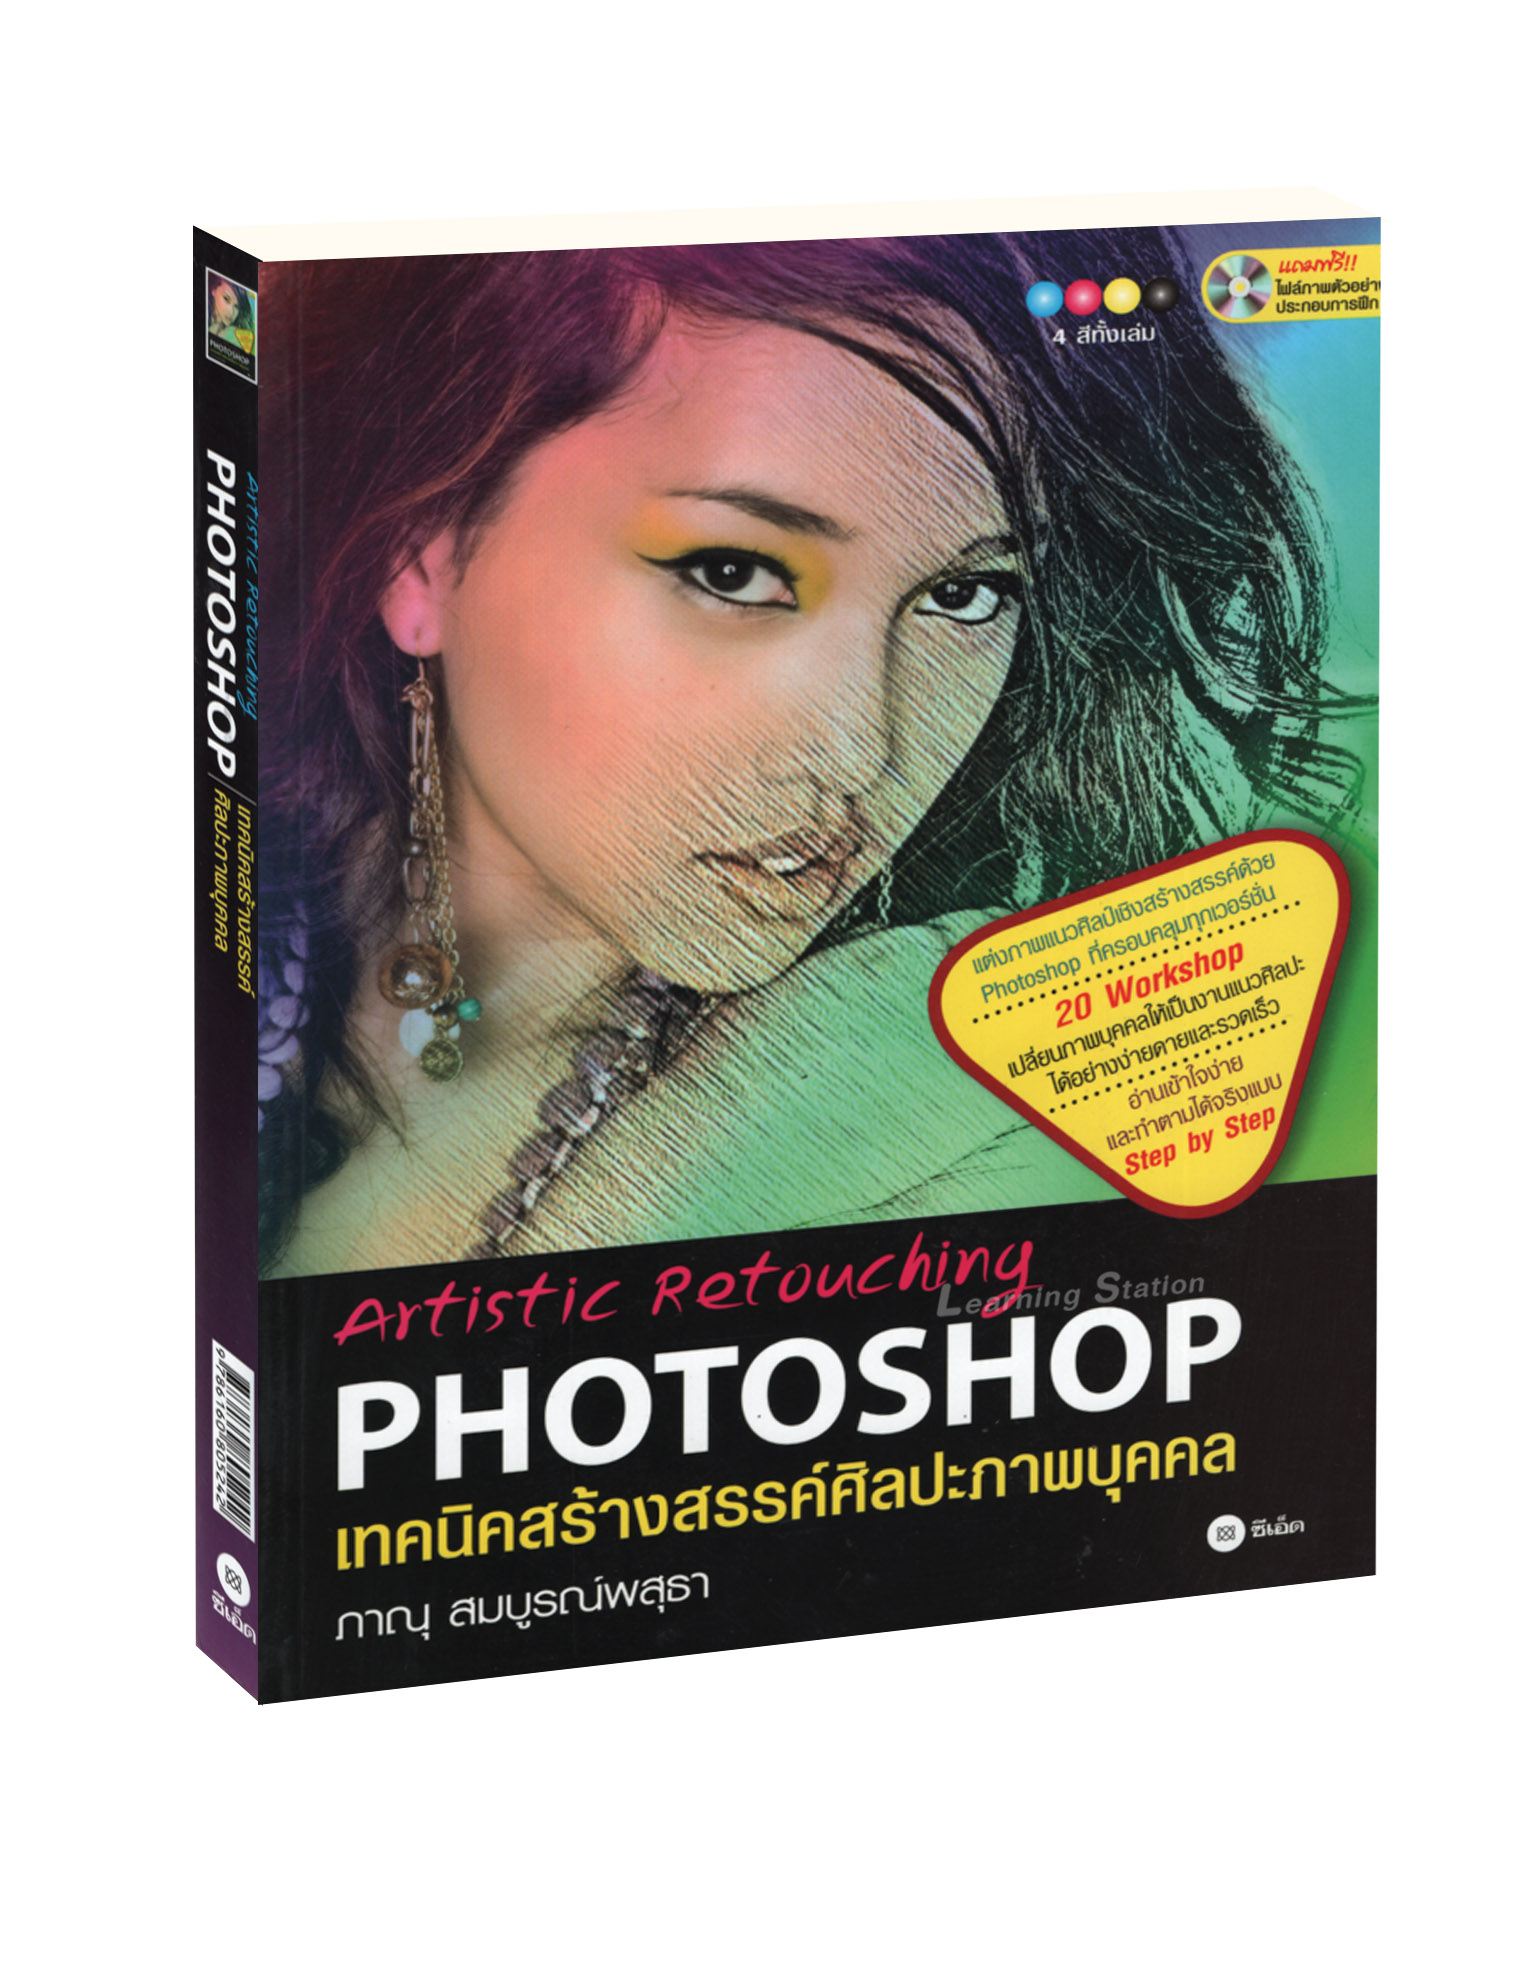 เทคนิคสร้างสรรค์ศิลปะภาพบุคคล : Artistic Retouching Photoshop +CD